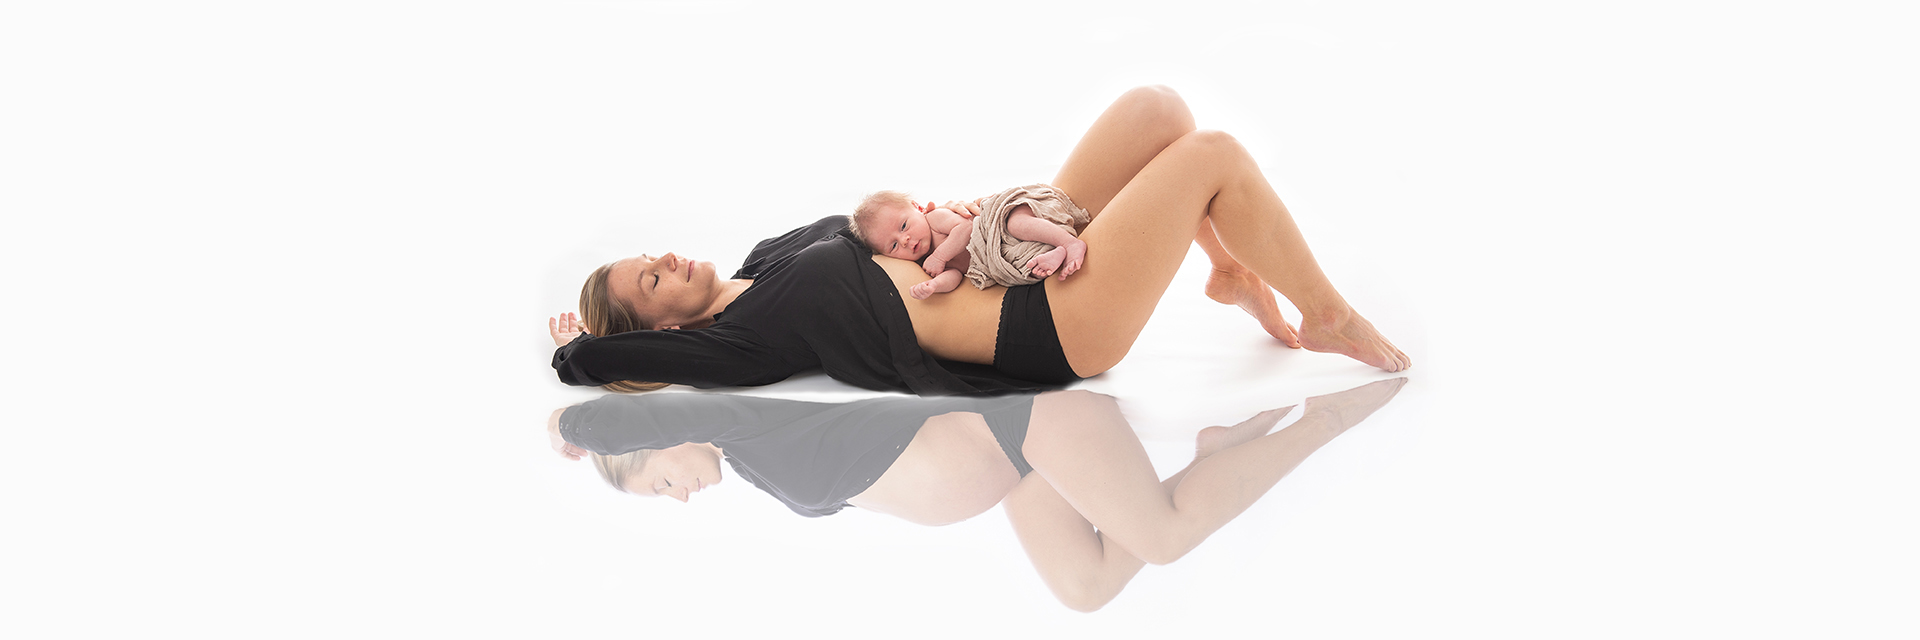 Mutter mit neugeborenem Baby und Spiegelung von Babybauch